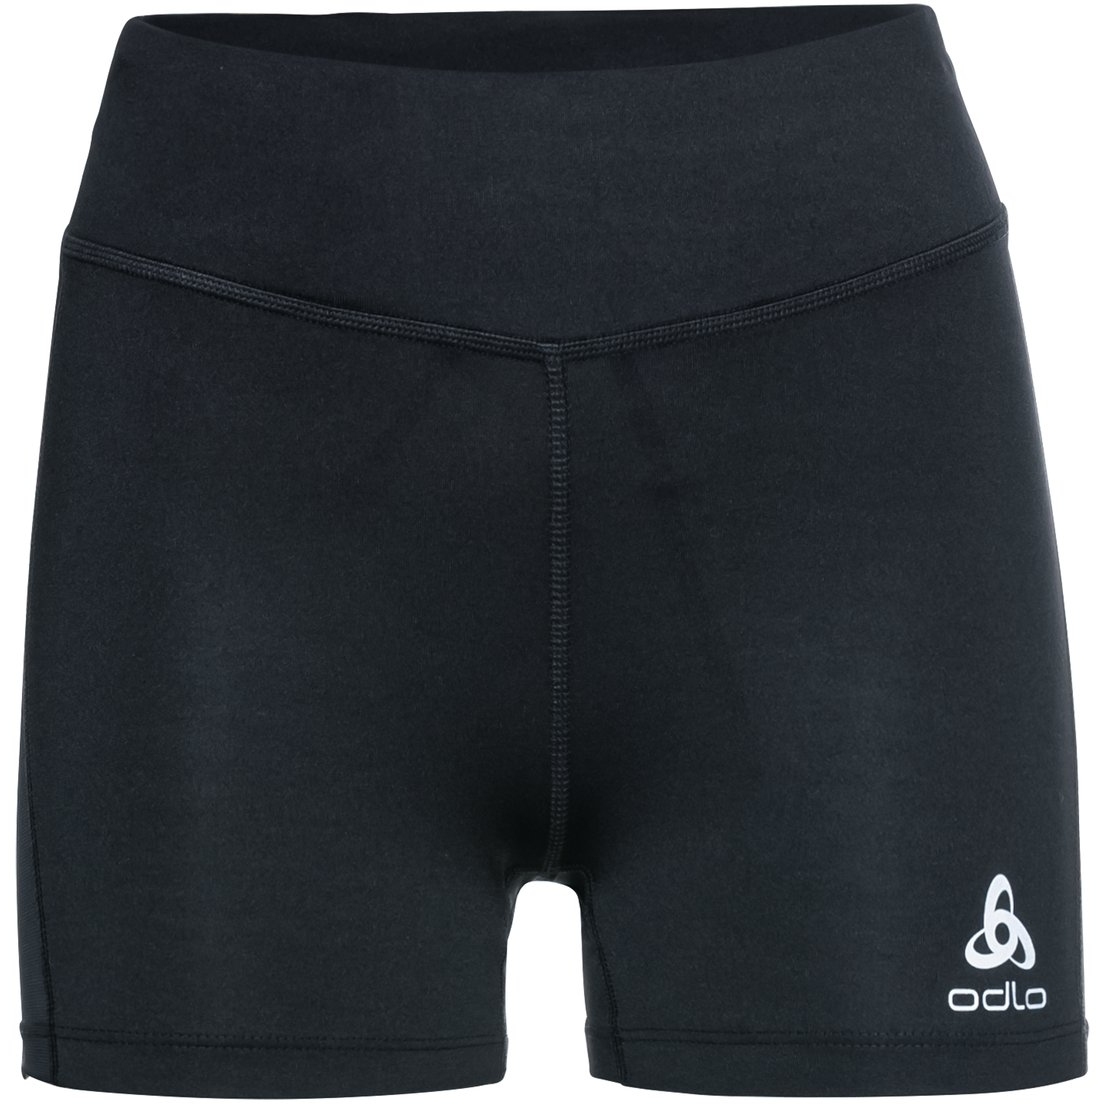 Image of Odlo Essentials Sprinter Mesh Shorts Women - black